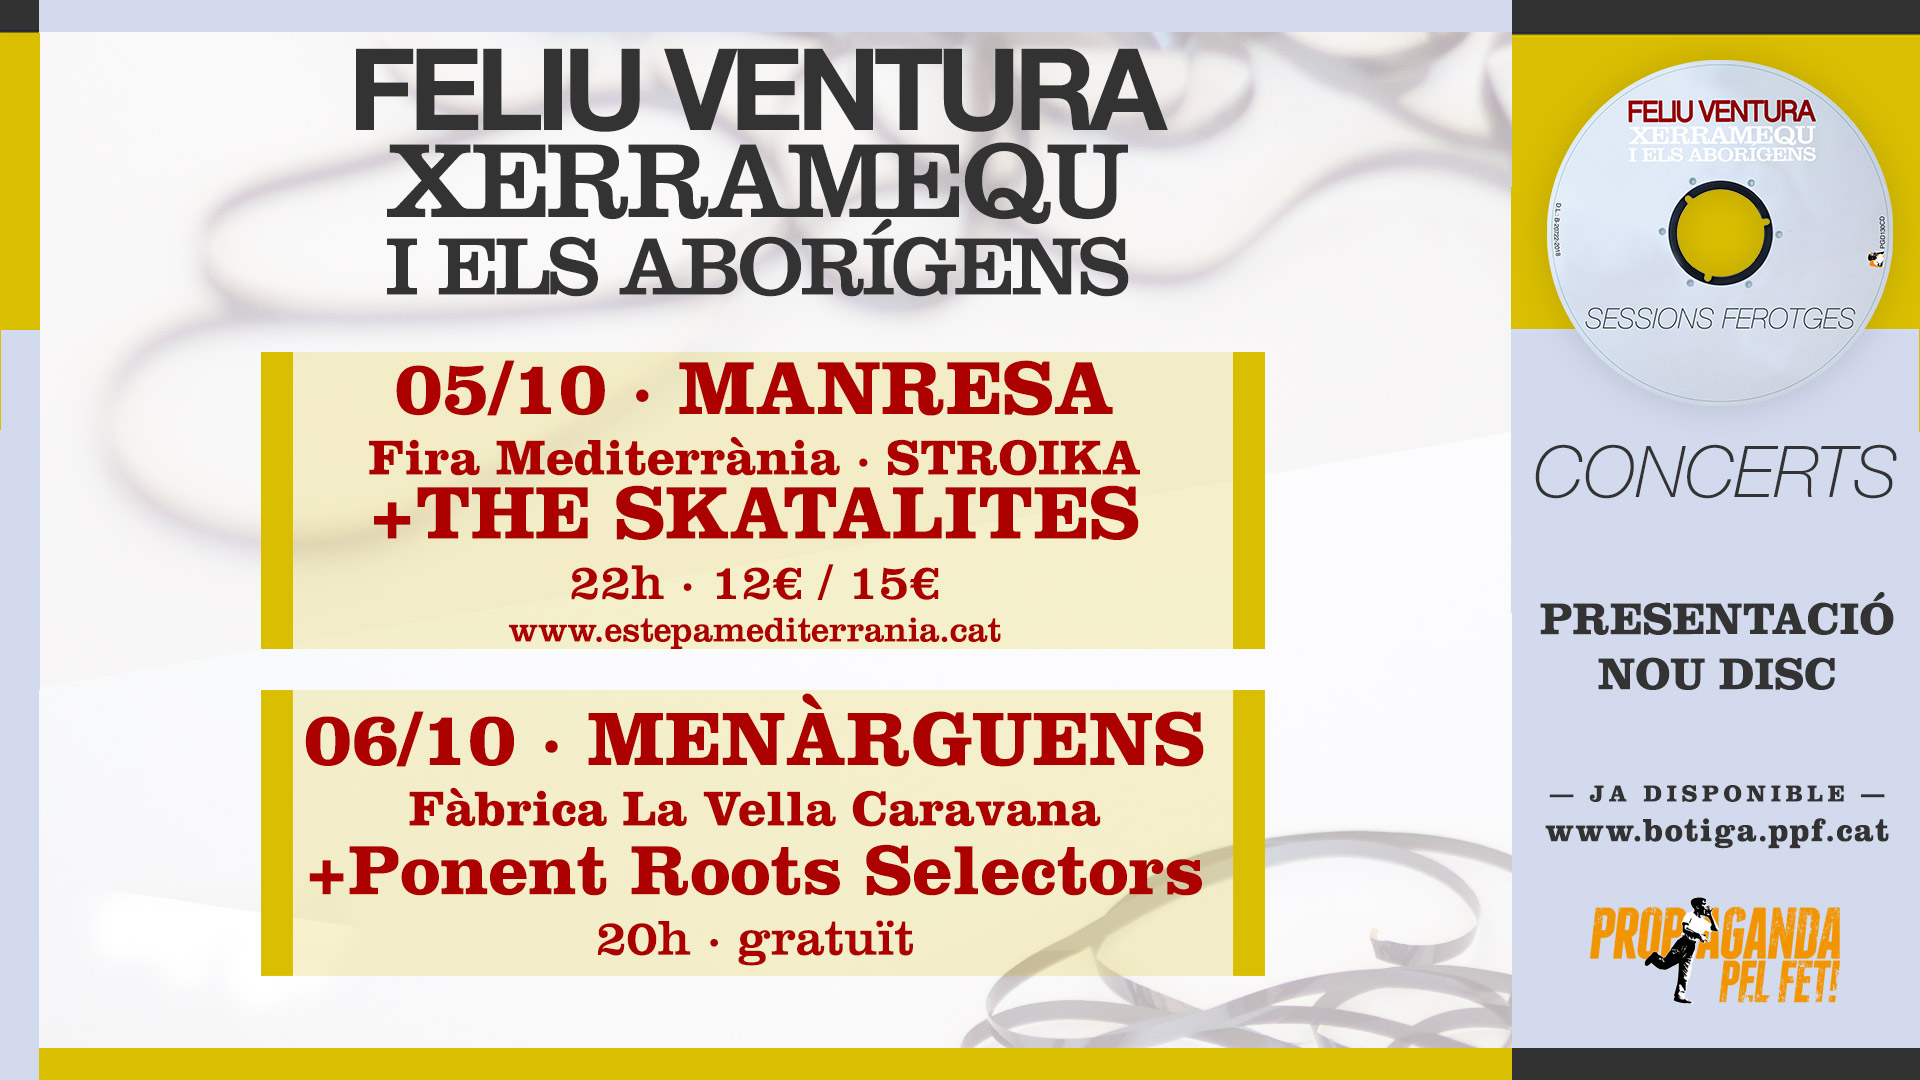 Feliu Ventura amb Xerramequ i els Aborígens comencen gira de presentació del nou disc divendres 5 d’octubre a la Fira Mediterrània de Manresa amb The Skatalites!